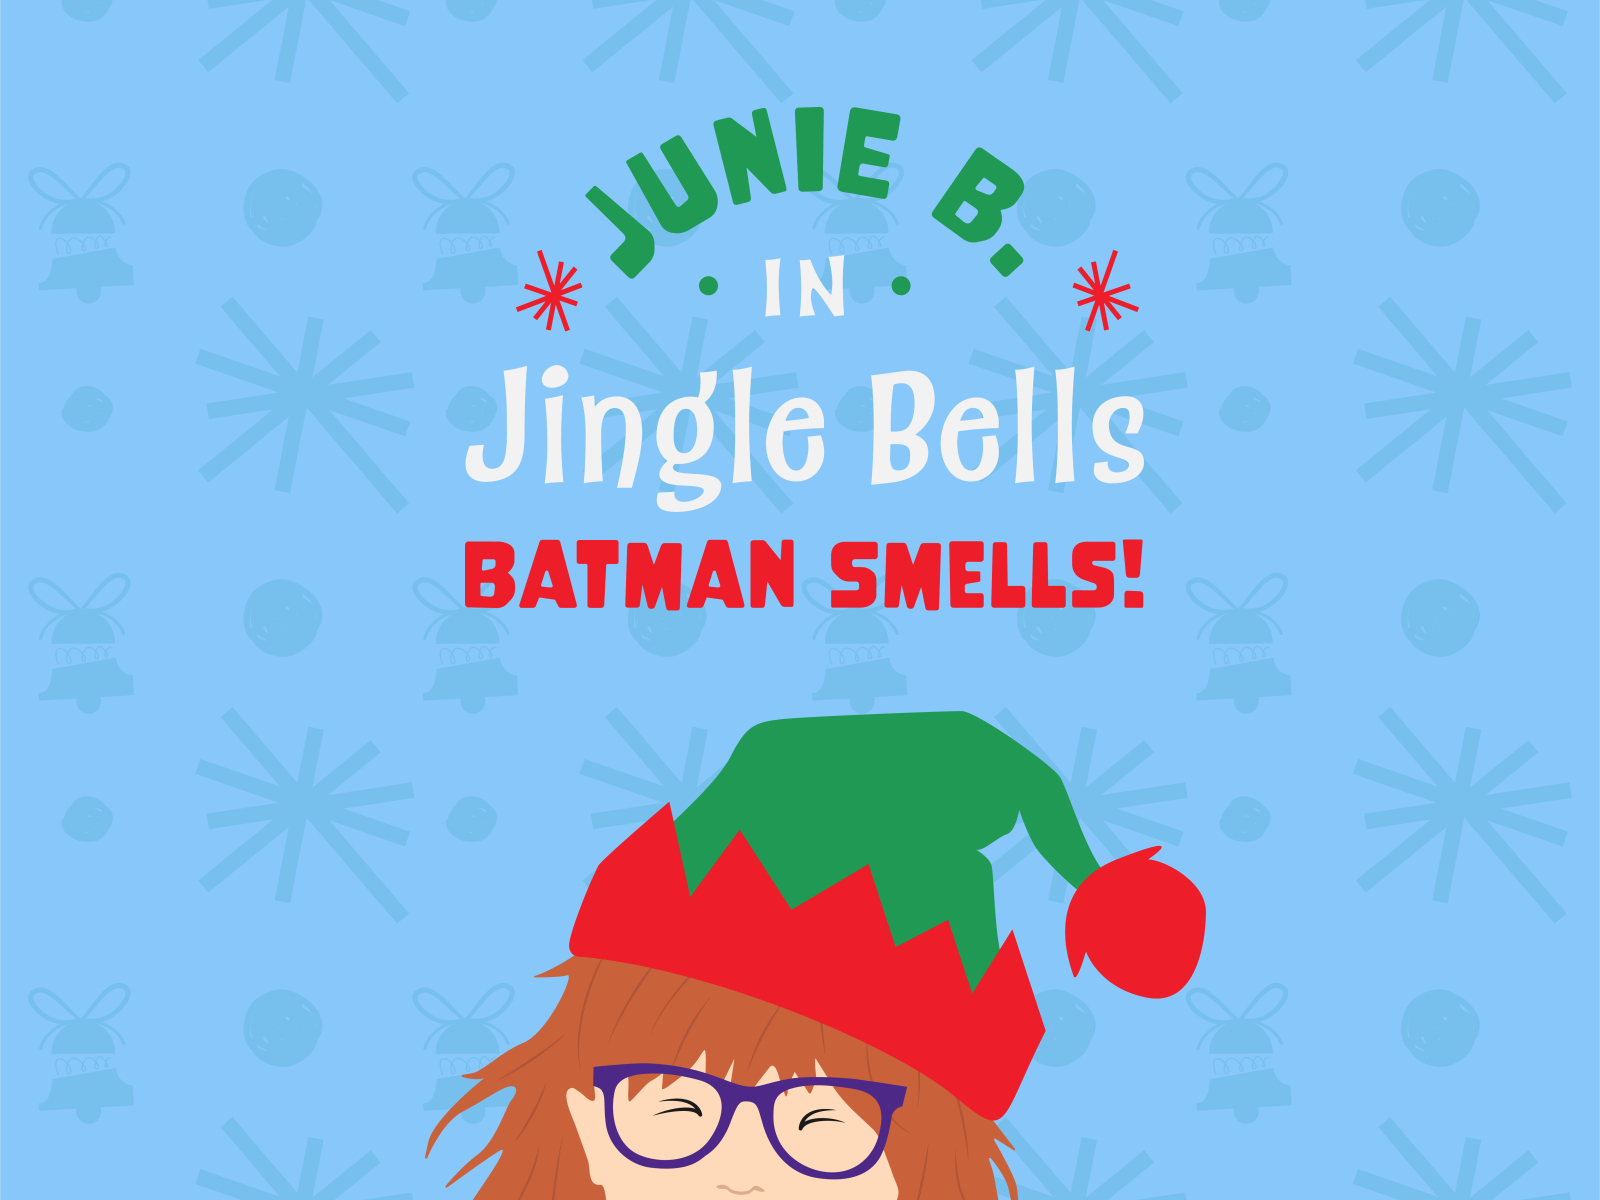 Junie b jones in jingle bells batman smells by debbie trout on